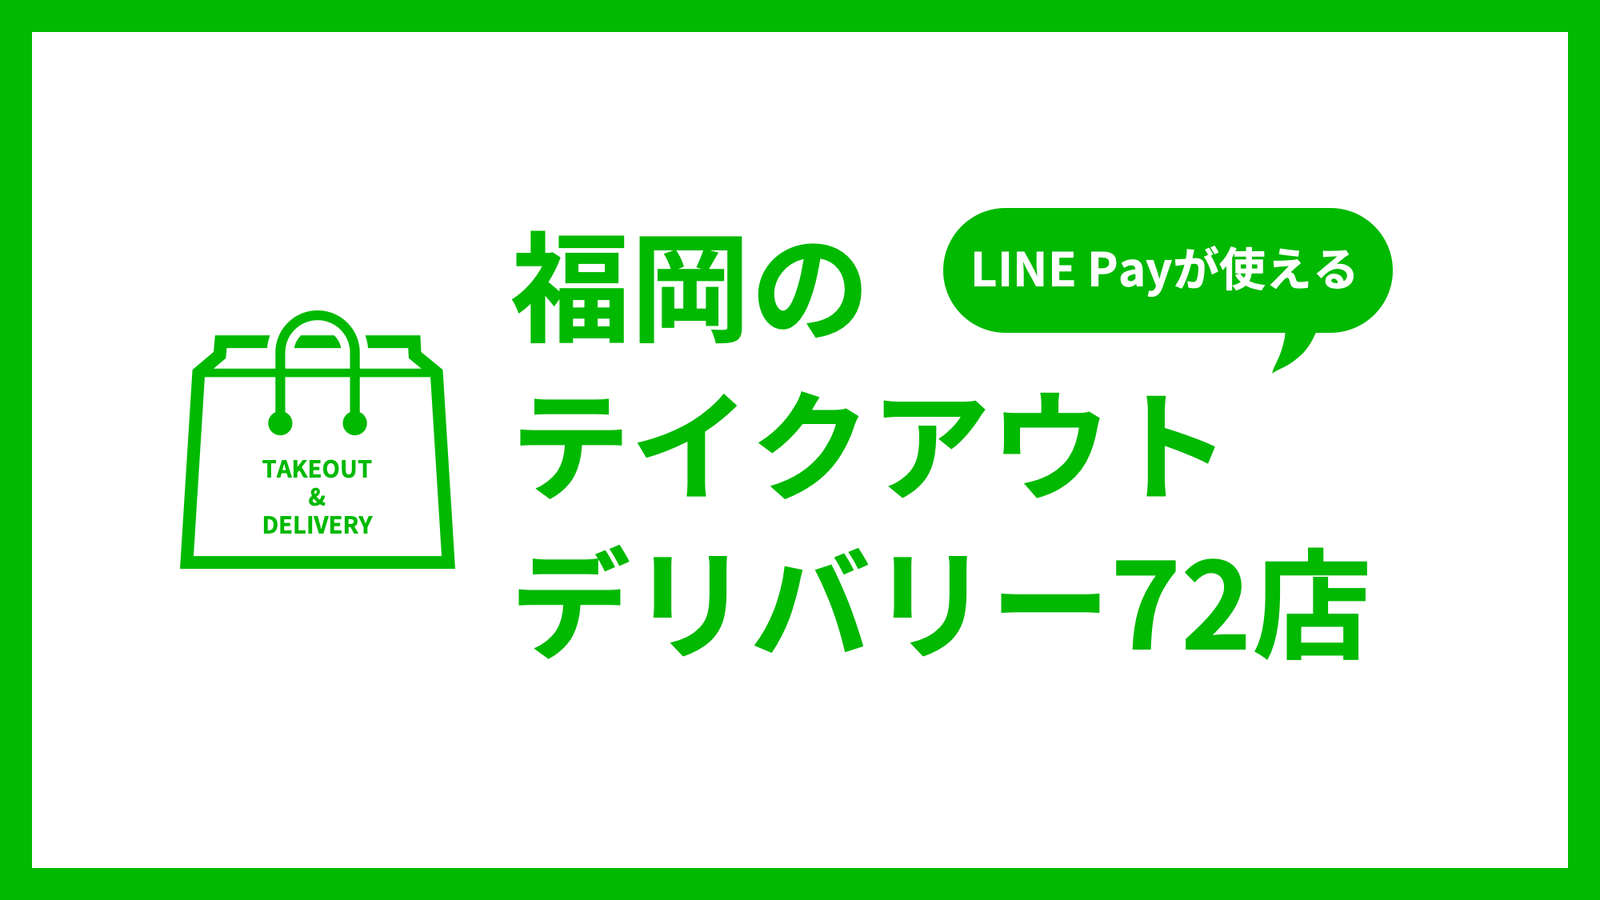 福岡のテイクアウト・デリバリー店舗72店をご紹介！もちろんLINE Payが使えます！ サムネイル画像